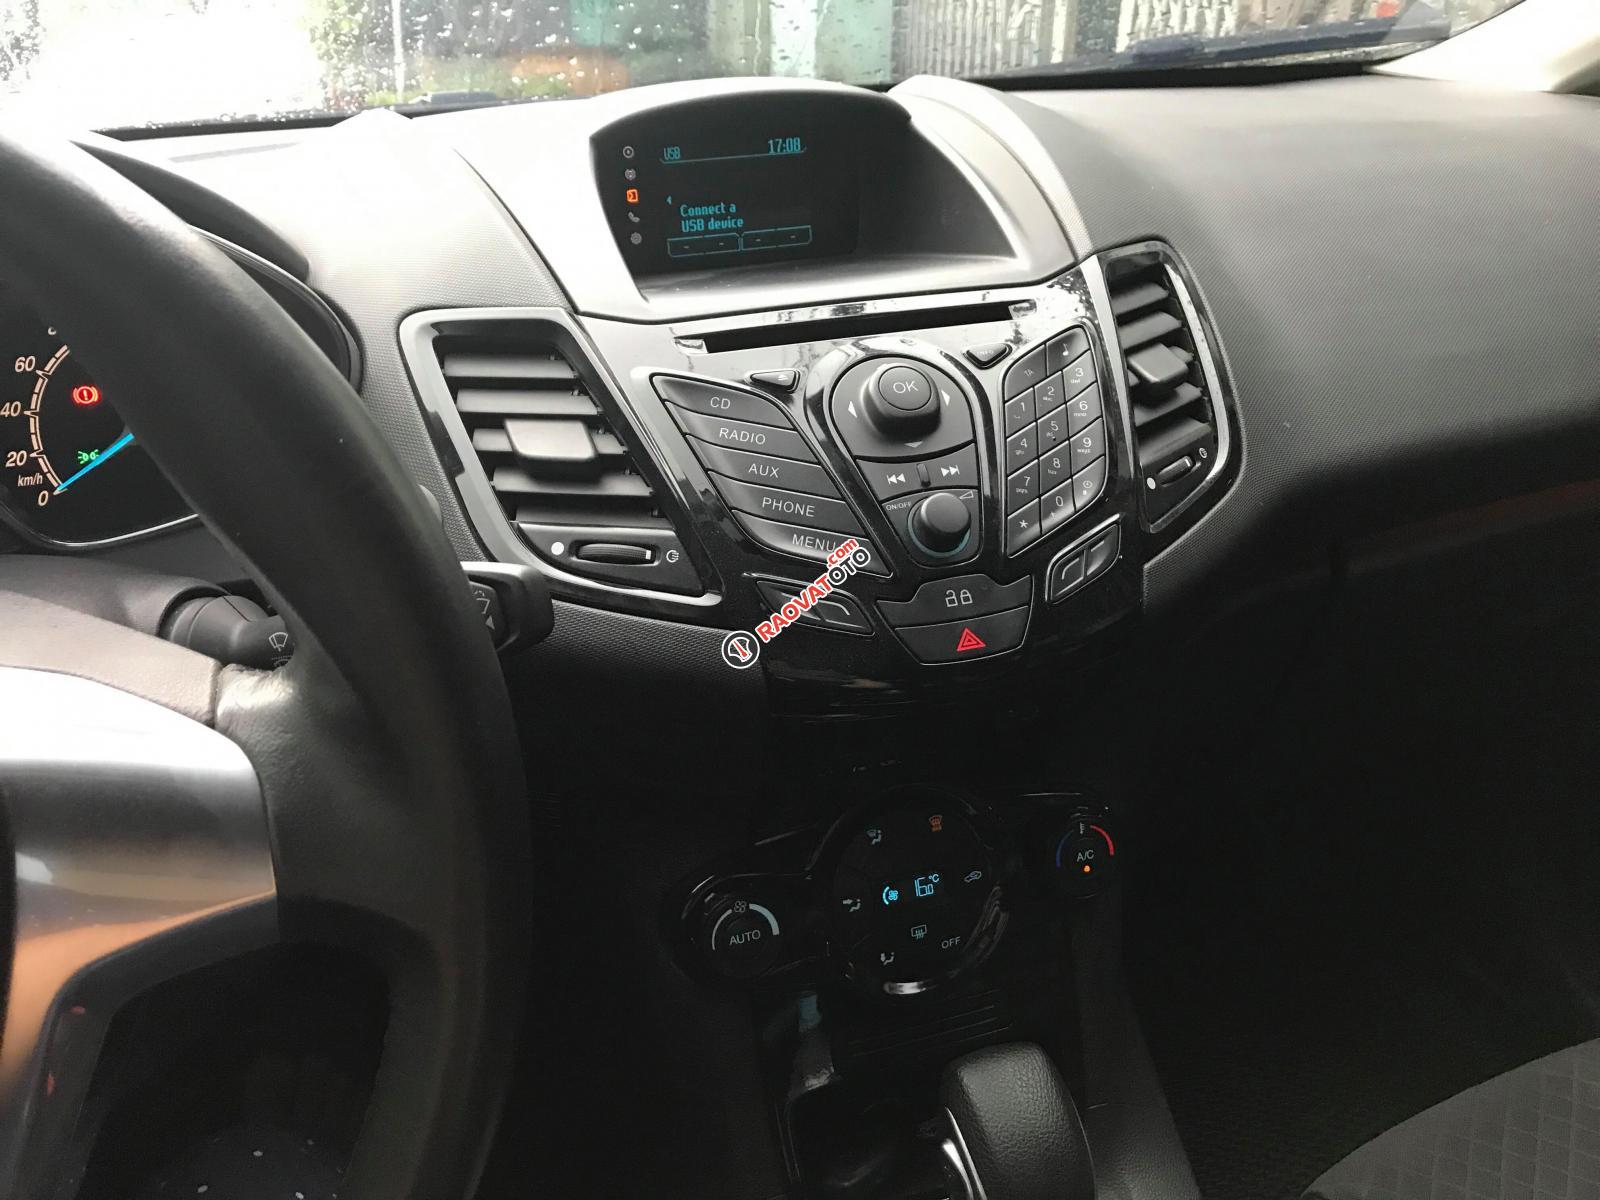 Bán ô tô Ford Fiesta năm 2016, màu xám (ghi), 445tr-3